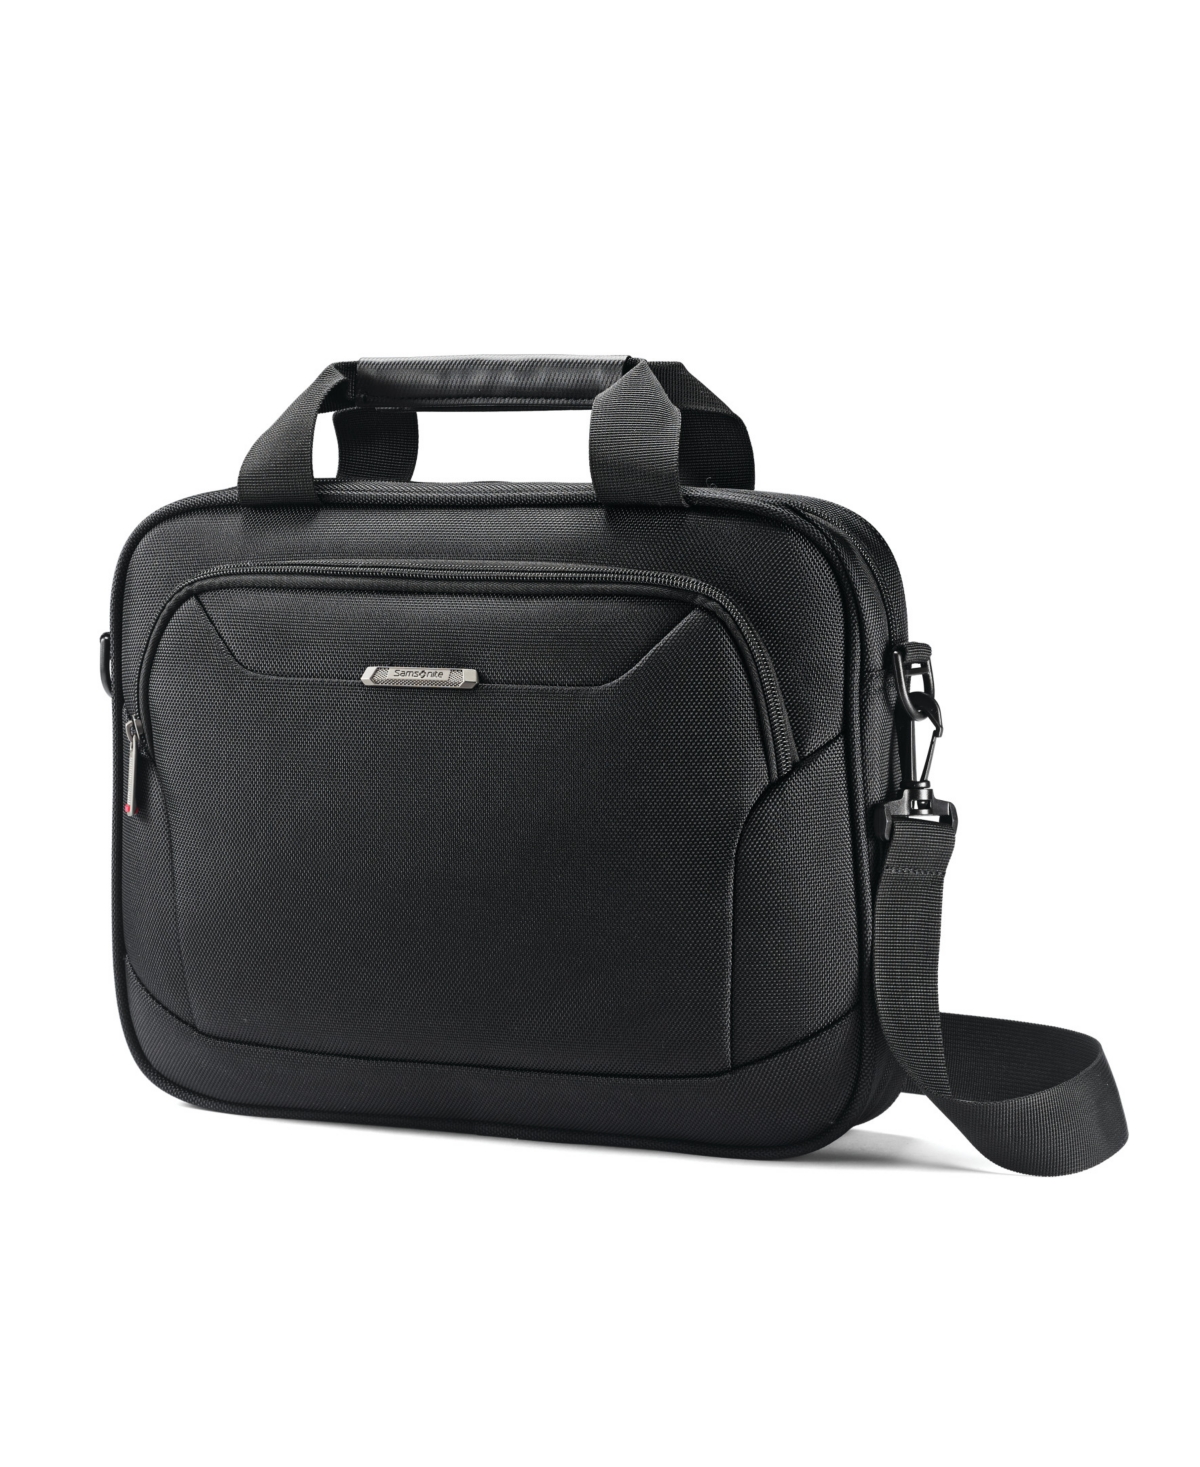 Samsonite Xenon 3.0 Shuttle Laptop Bag In Black